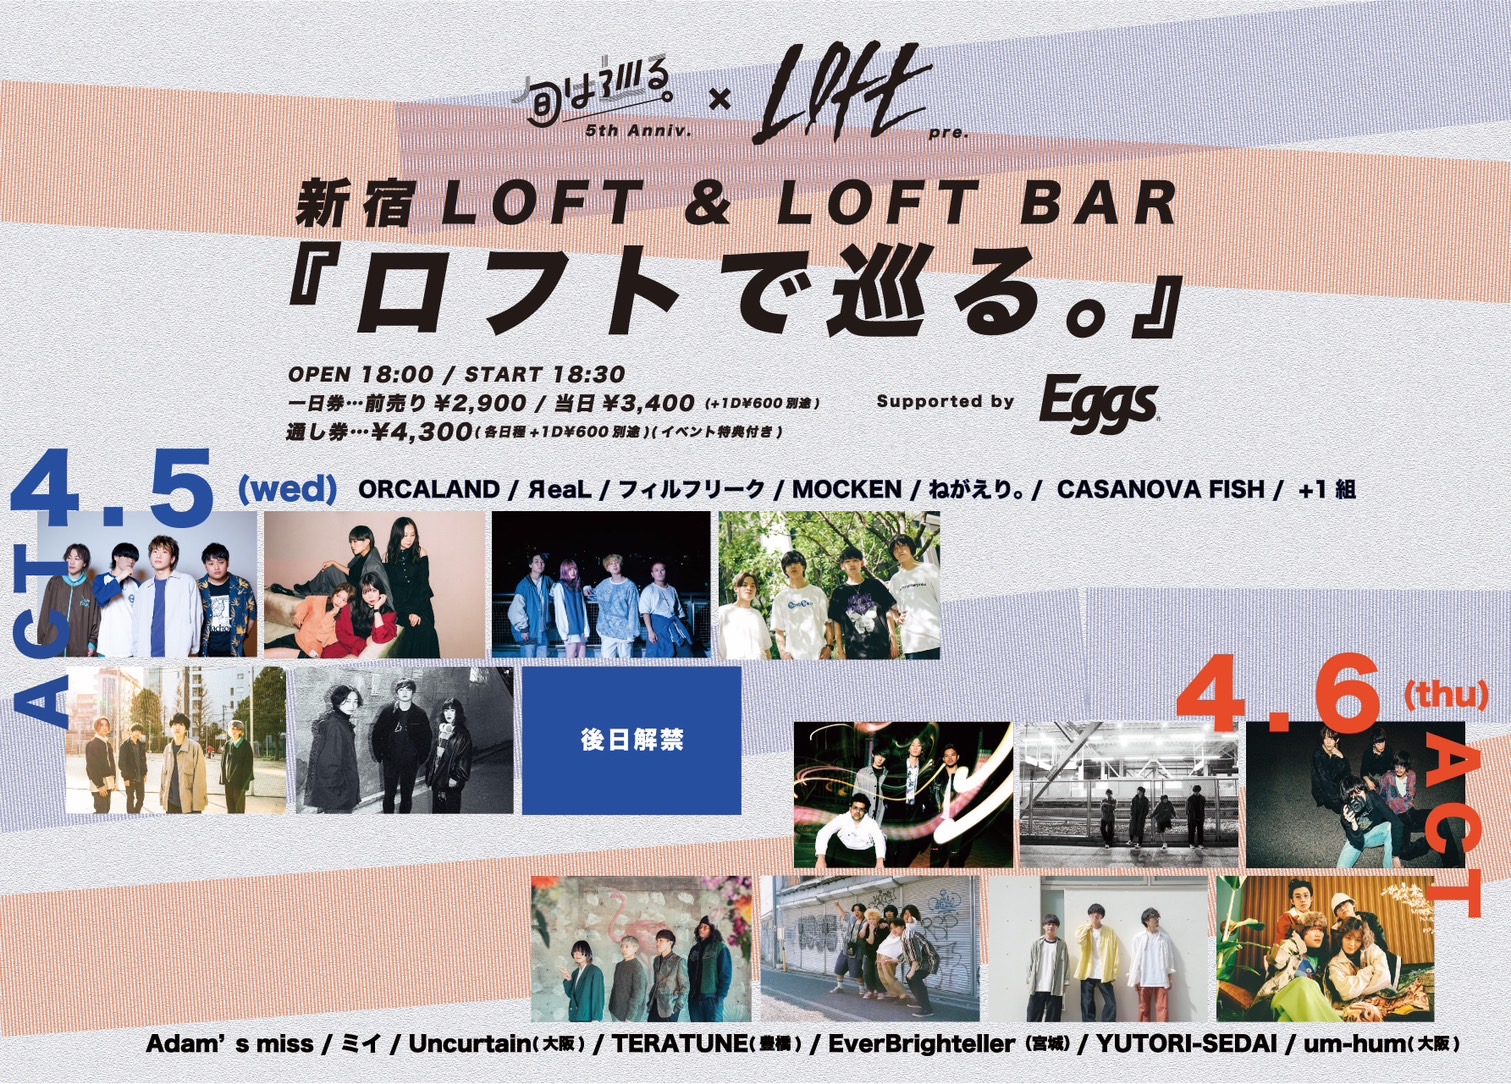 「『旬は巡る。』5周年×新宿LOFT presents 『ロフトで巡る。』supported by Eggs」